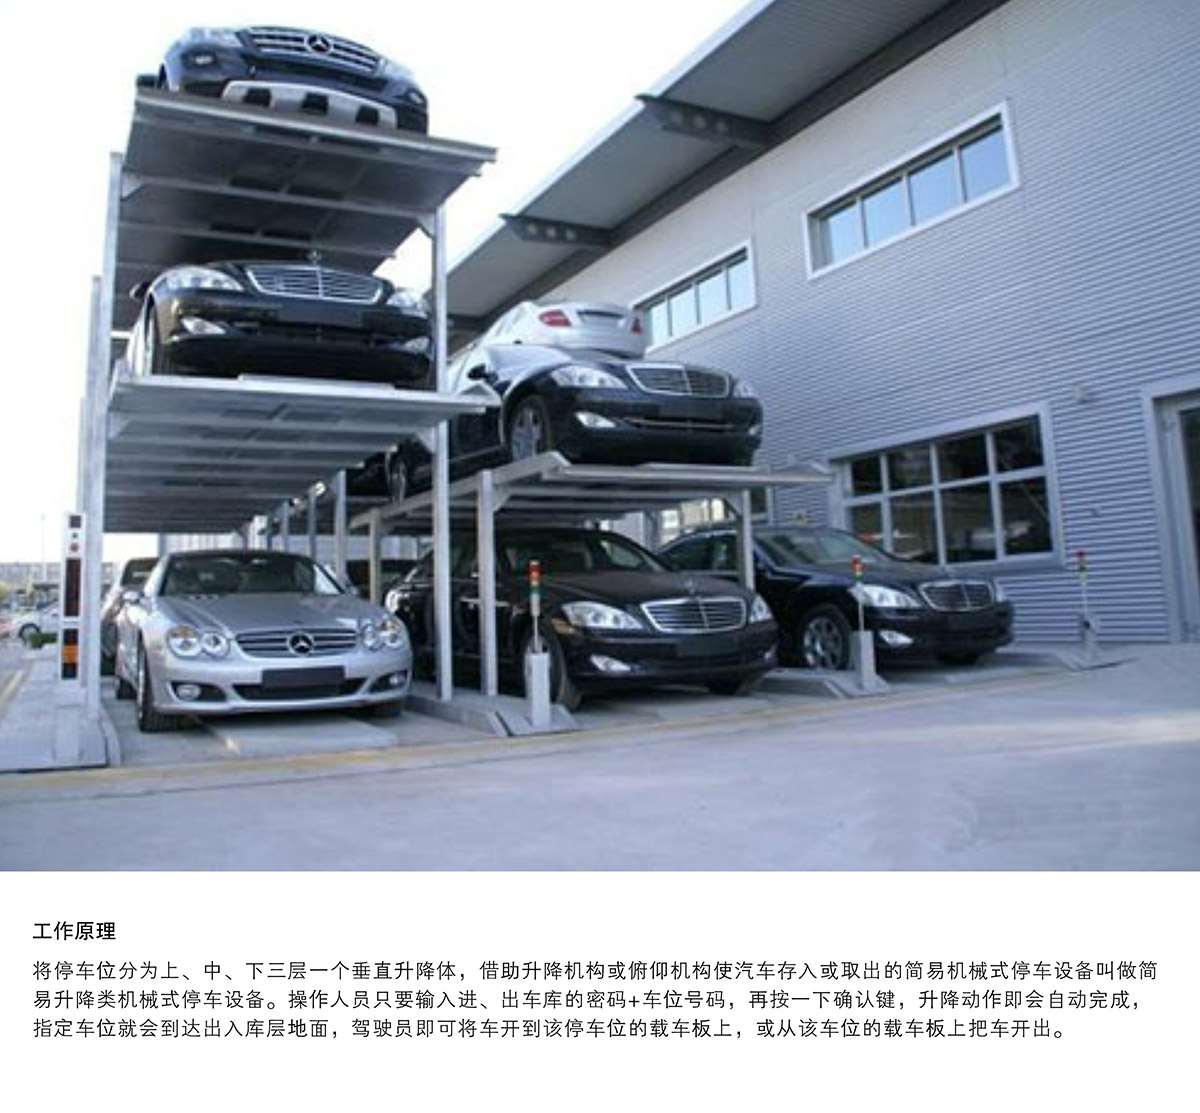 机械车库PJS3D2三层地坑简易升降停车设备工作原理.jpg